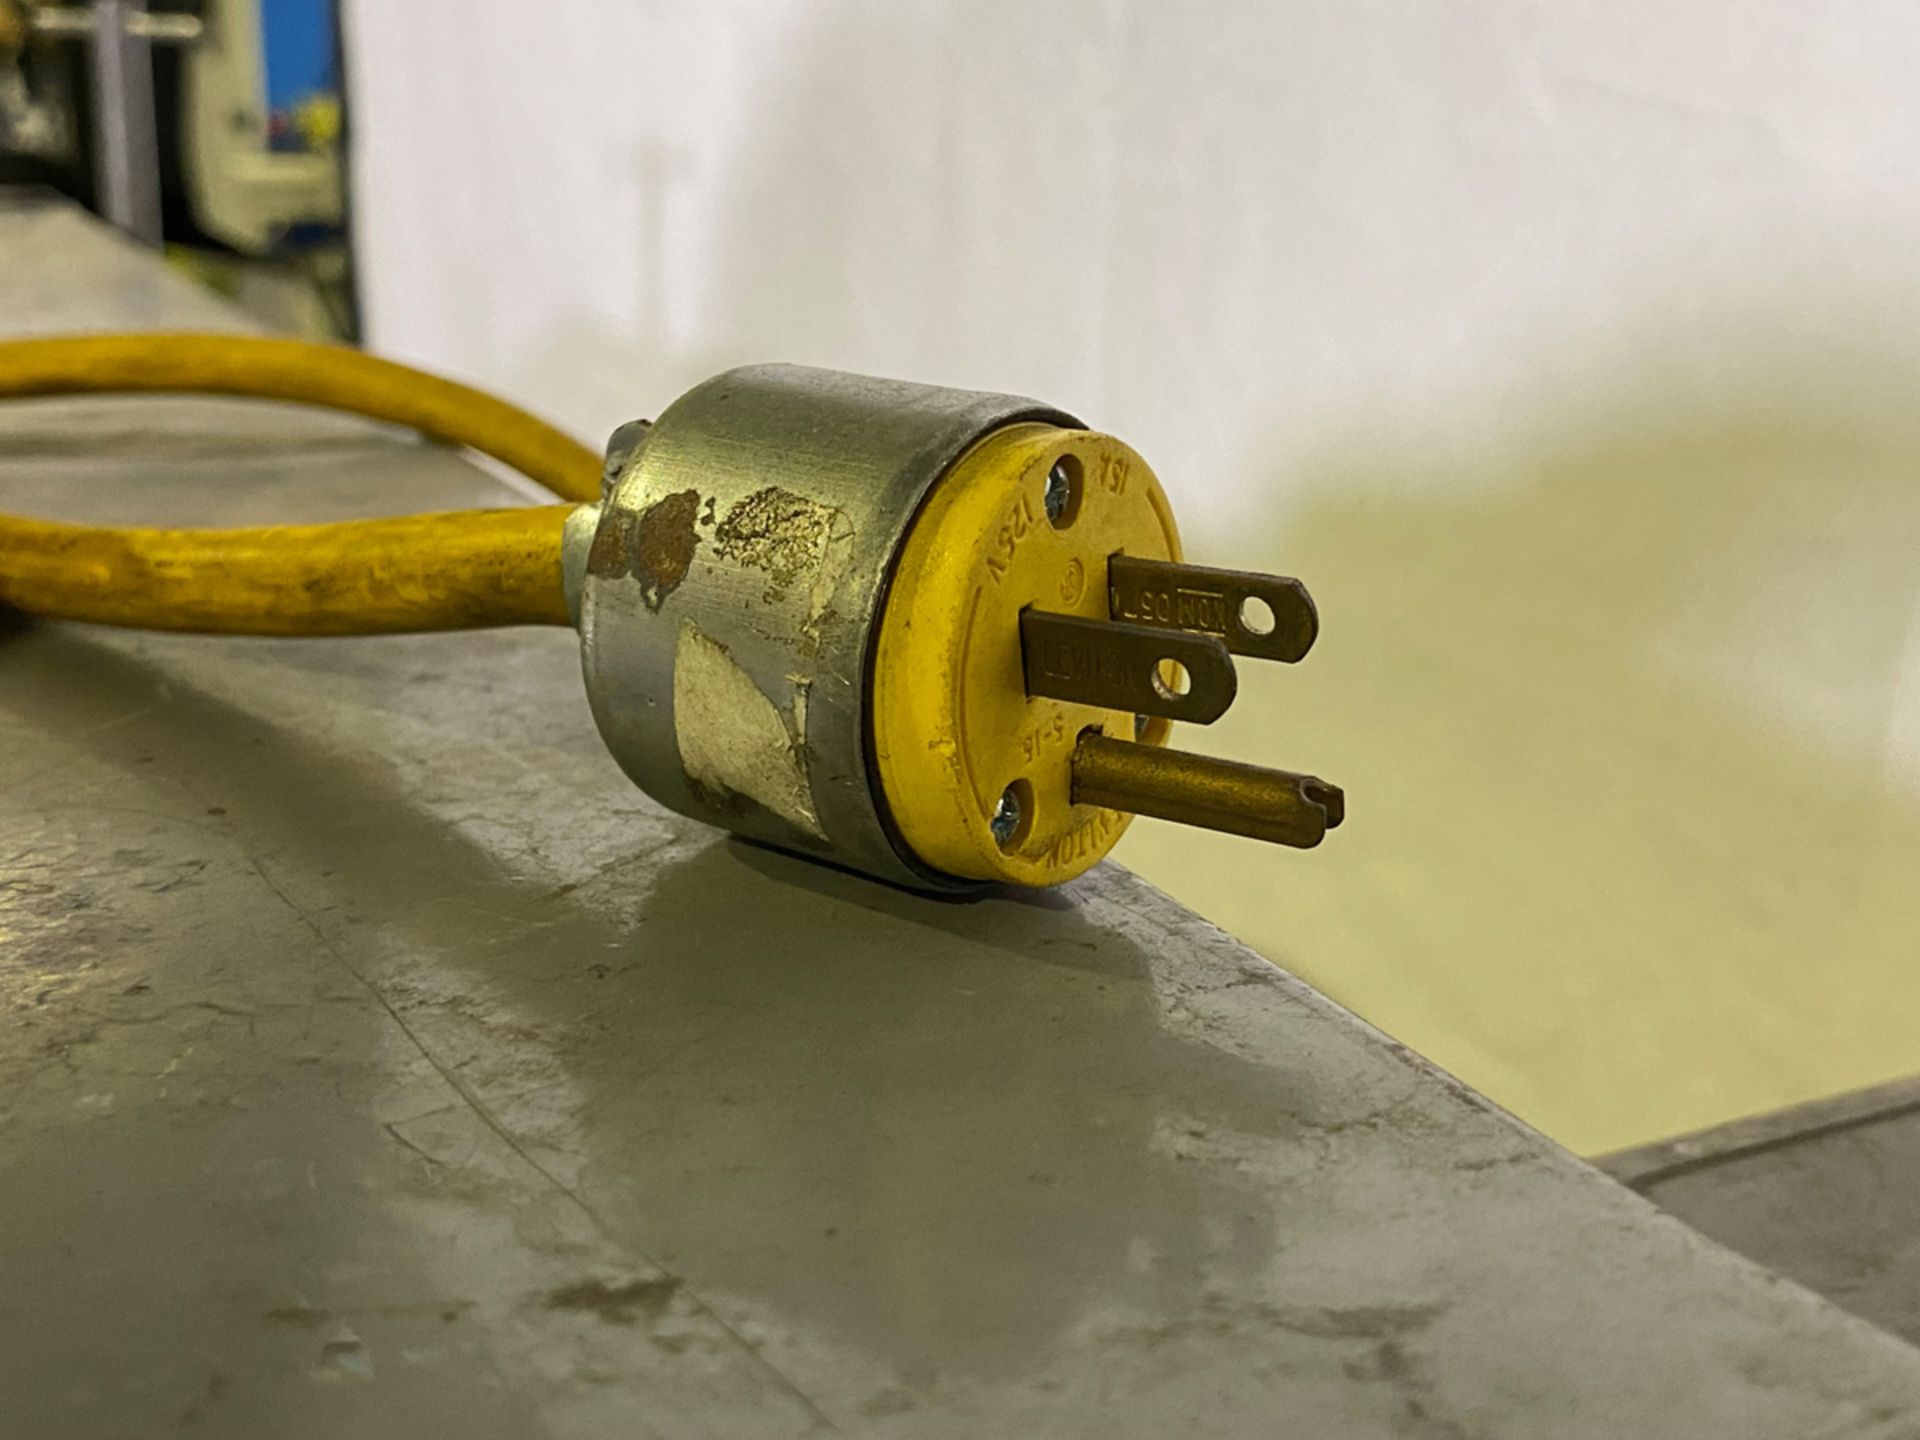 Lockformer slitter, 16 gauge, 24" throat, 1/2 HP, 110 V., 1 phase - Image 7 of 9